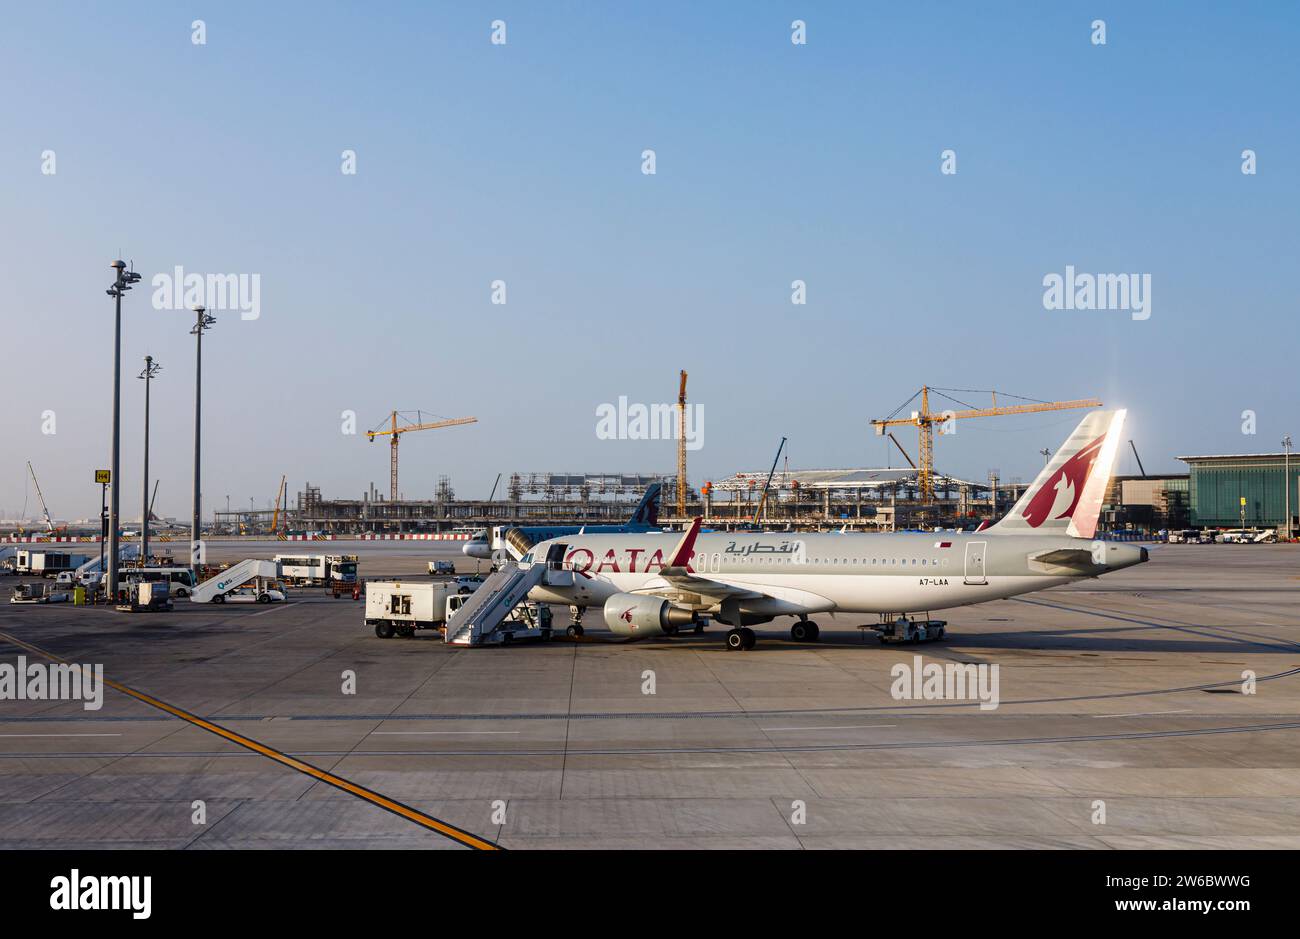 Vue latérale d'un avion Airbus A320-214 de Qatar Airways debout à l'aéroport international Hamad à Doha, Qatar Banque D'Images